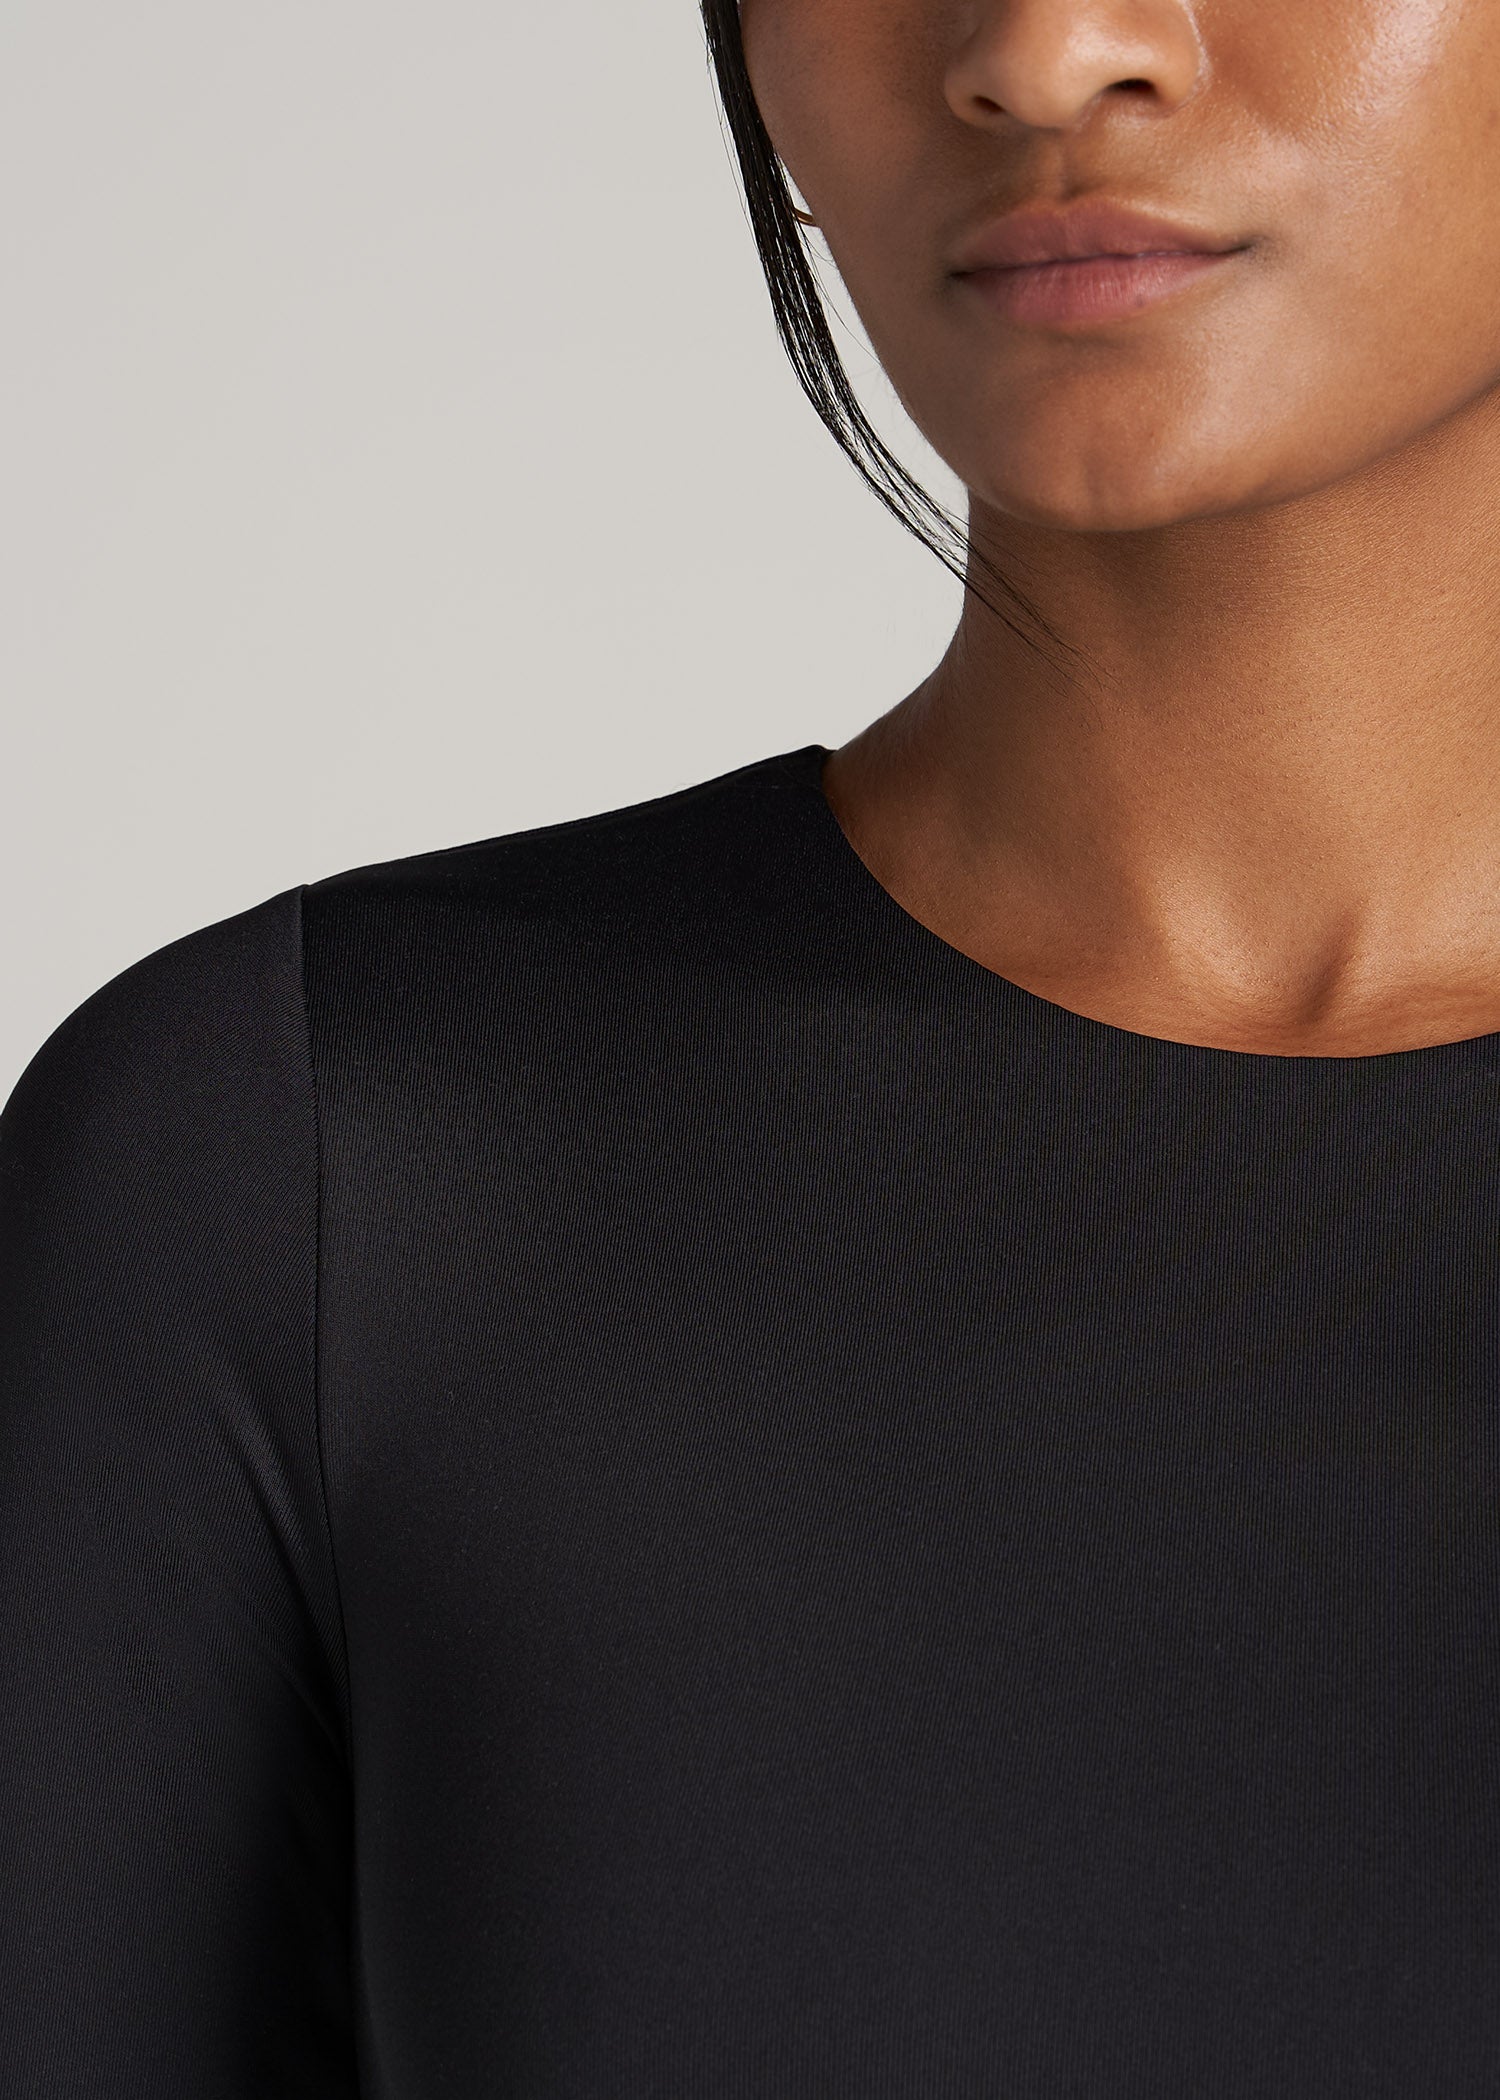 Women's Long Sleeve Business Shirt Bodysuit Button High Cut Thong